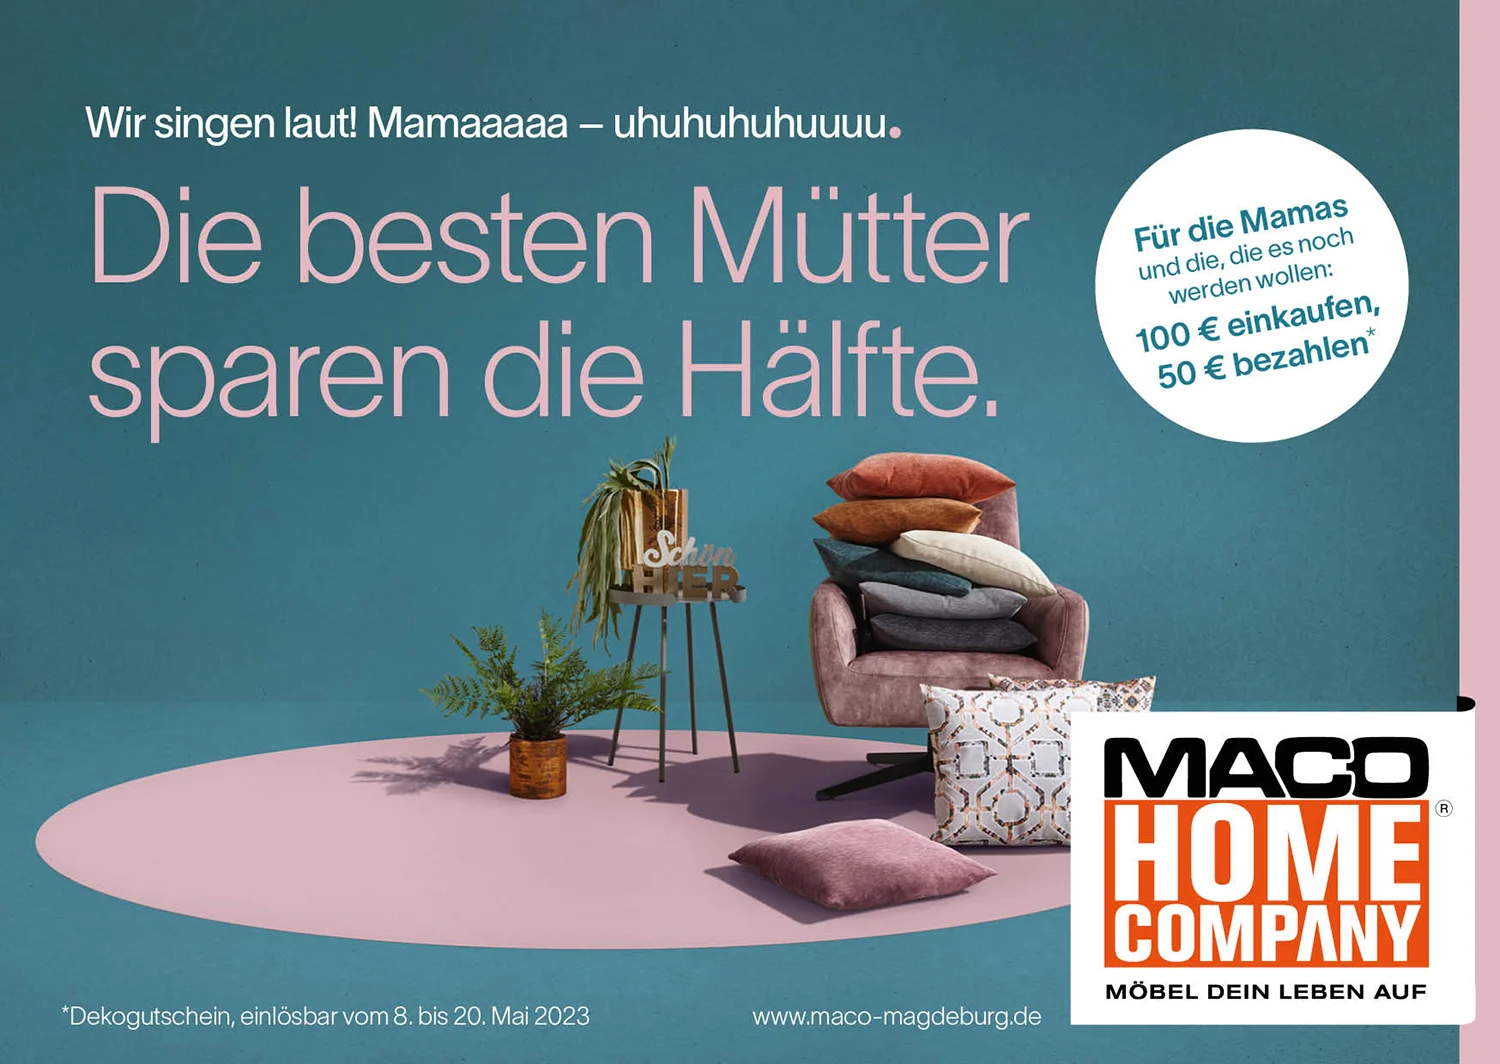 Maco Home Company Magdeburg: für 100€ einkaufen und nur 50€ zahlen